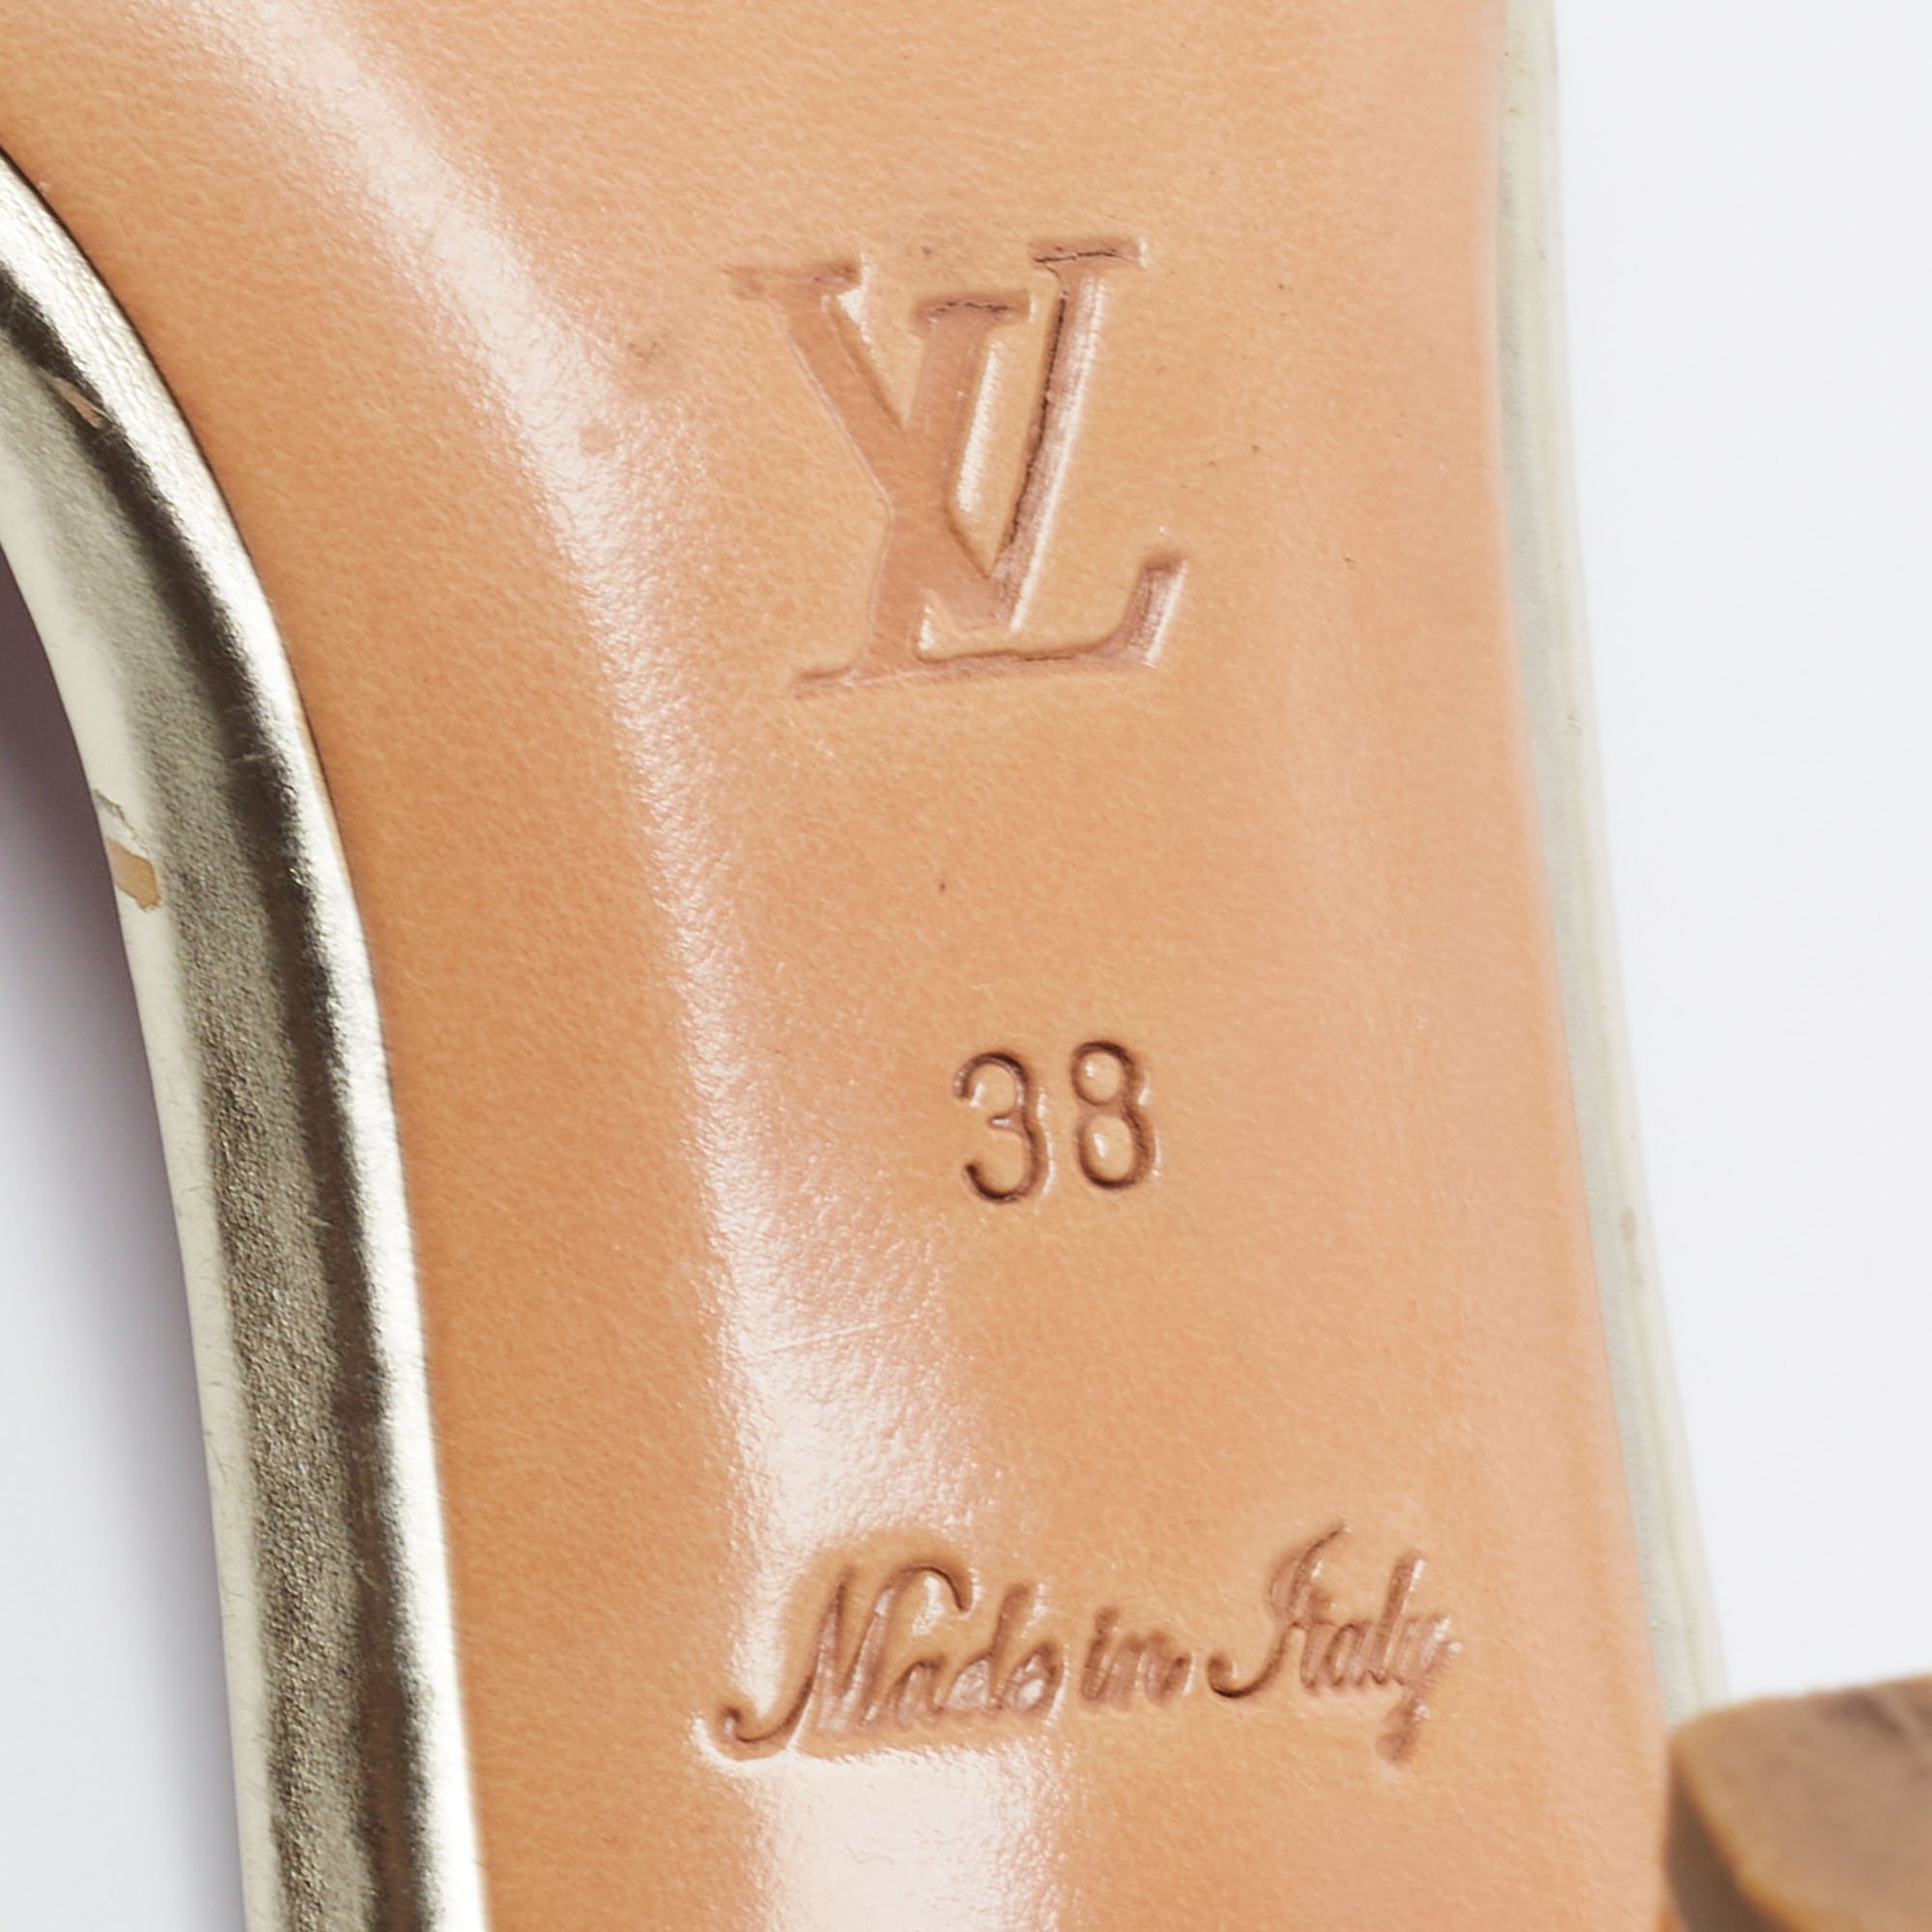 Louis Vuitton Gold Leather Slide Sandals Size 38